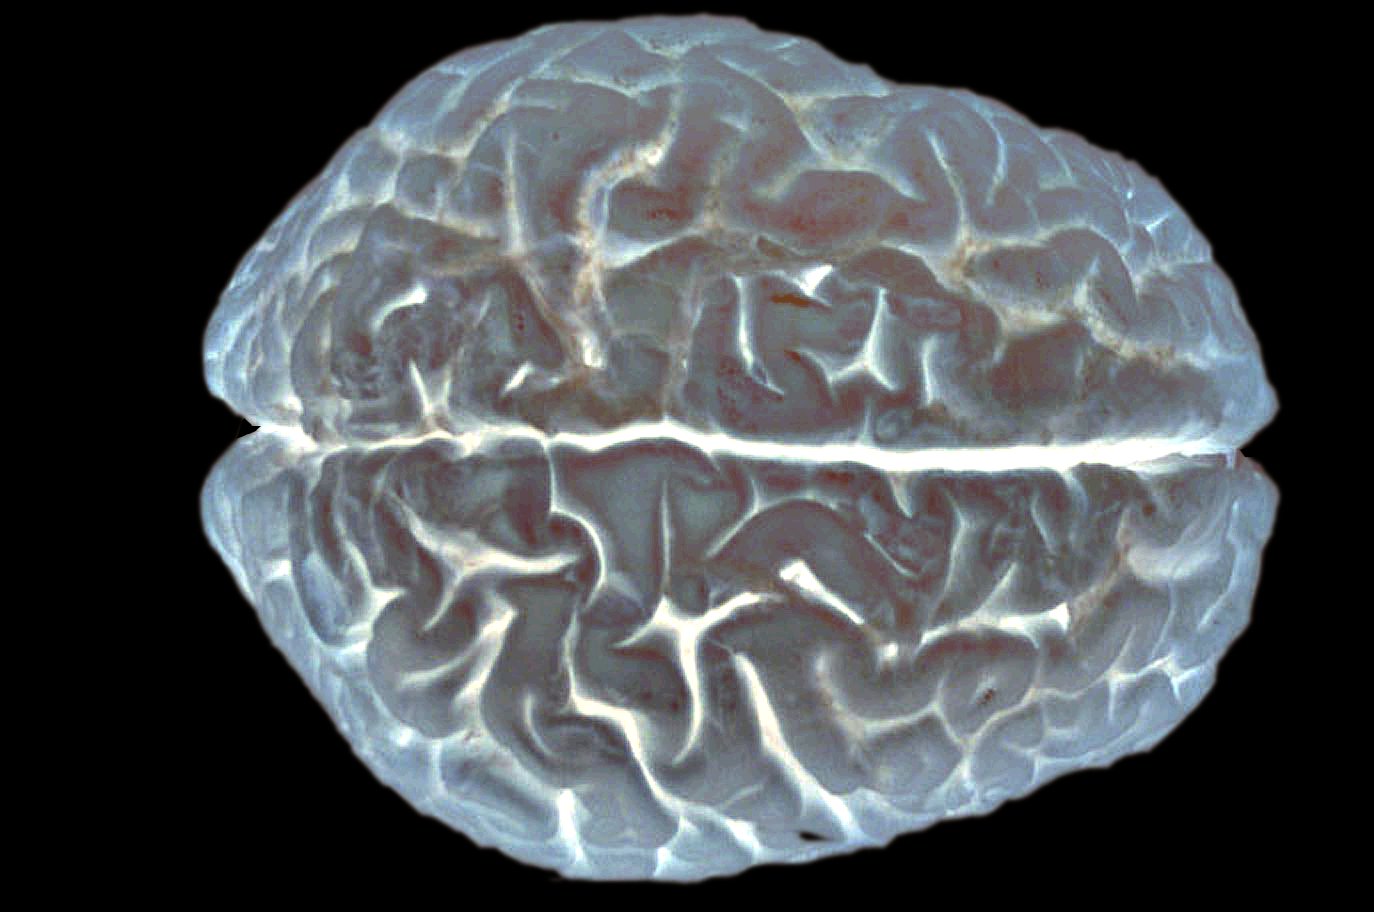 Le cerveau cache encore de nombreux mystères. Dans cette étude, les chercheurs ont découvert un gène impliqué dans les facultés intellectuelles, qui affecterait le développement du cortex. © EUSKALANATO / Flickr - Licence Creative Commons (by-nc-sa 2.0)